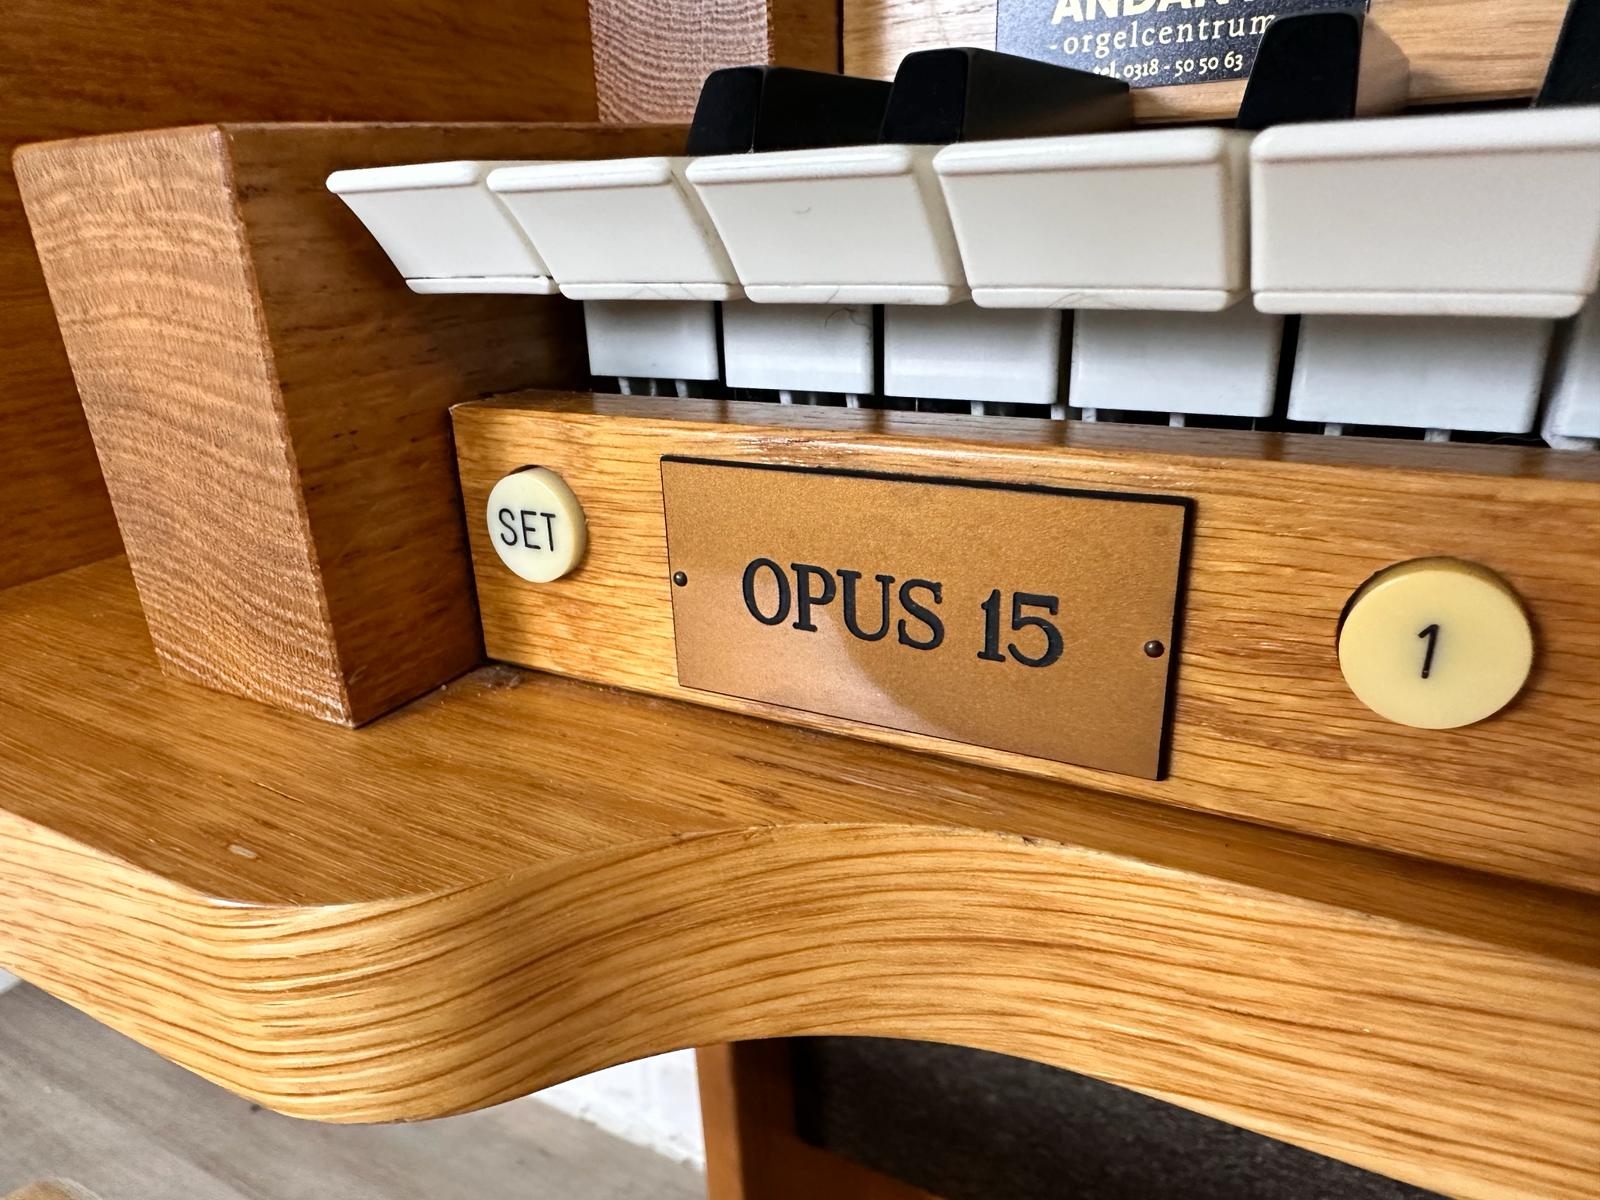 Johannus Opus 15 licht eiken Andante Orgels